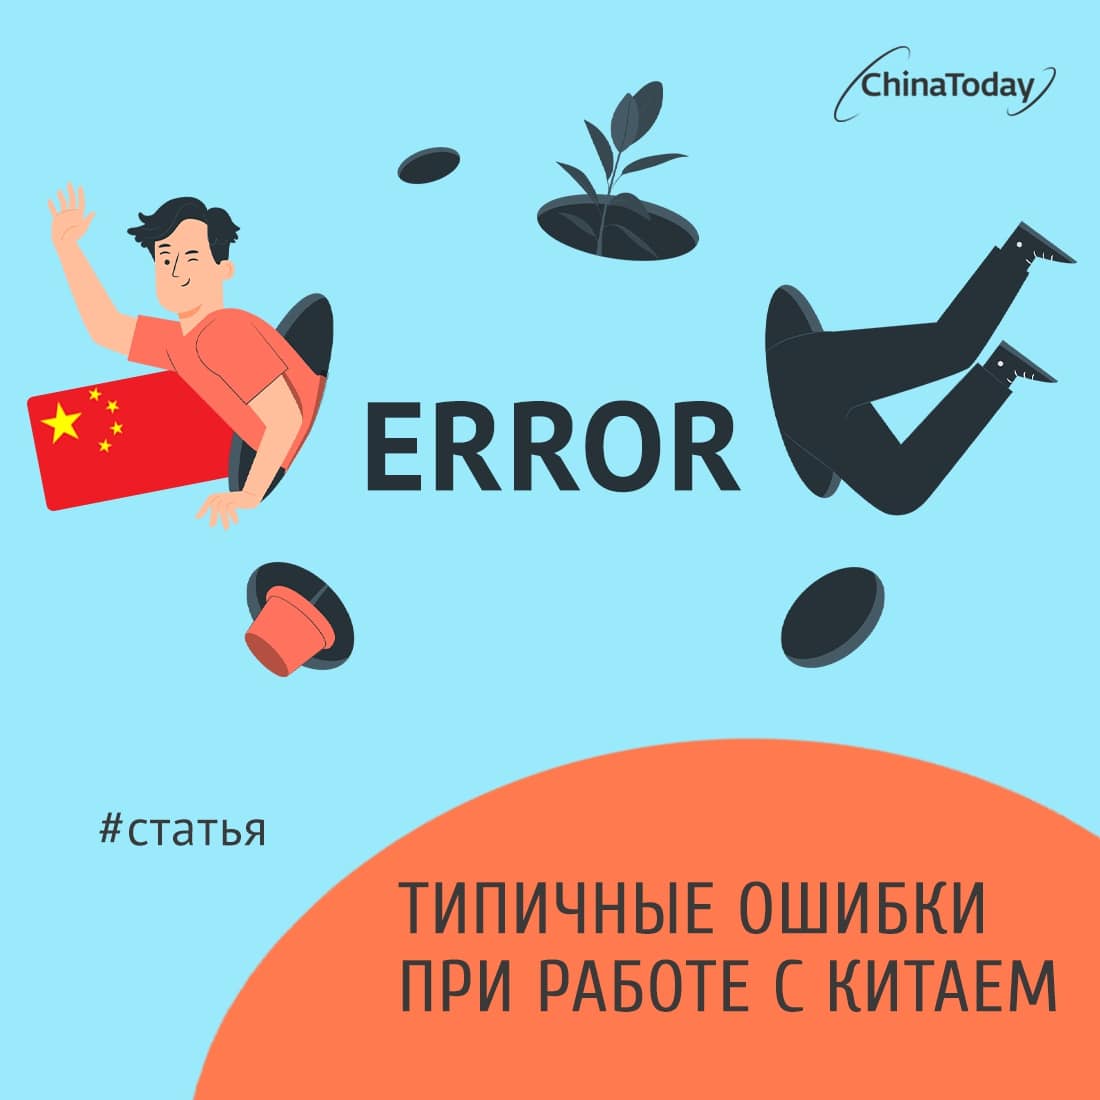 Ошибки в бизнесе с Китаем: 10 правил от ChinaToday